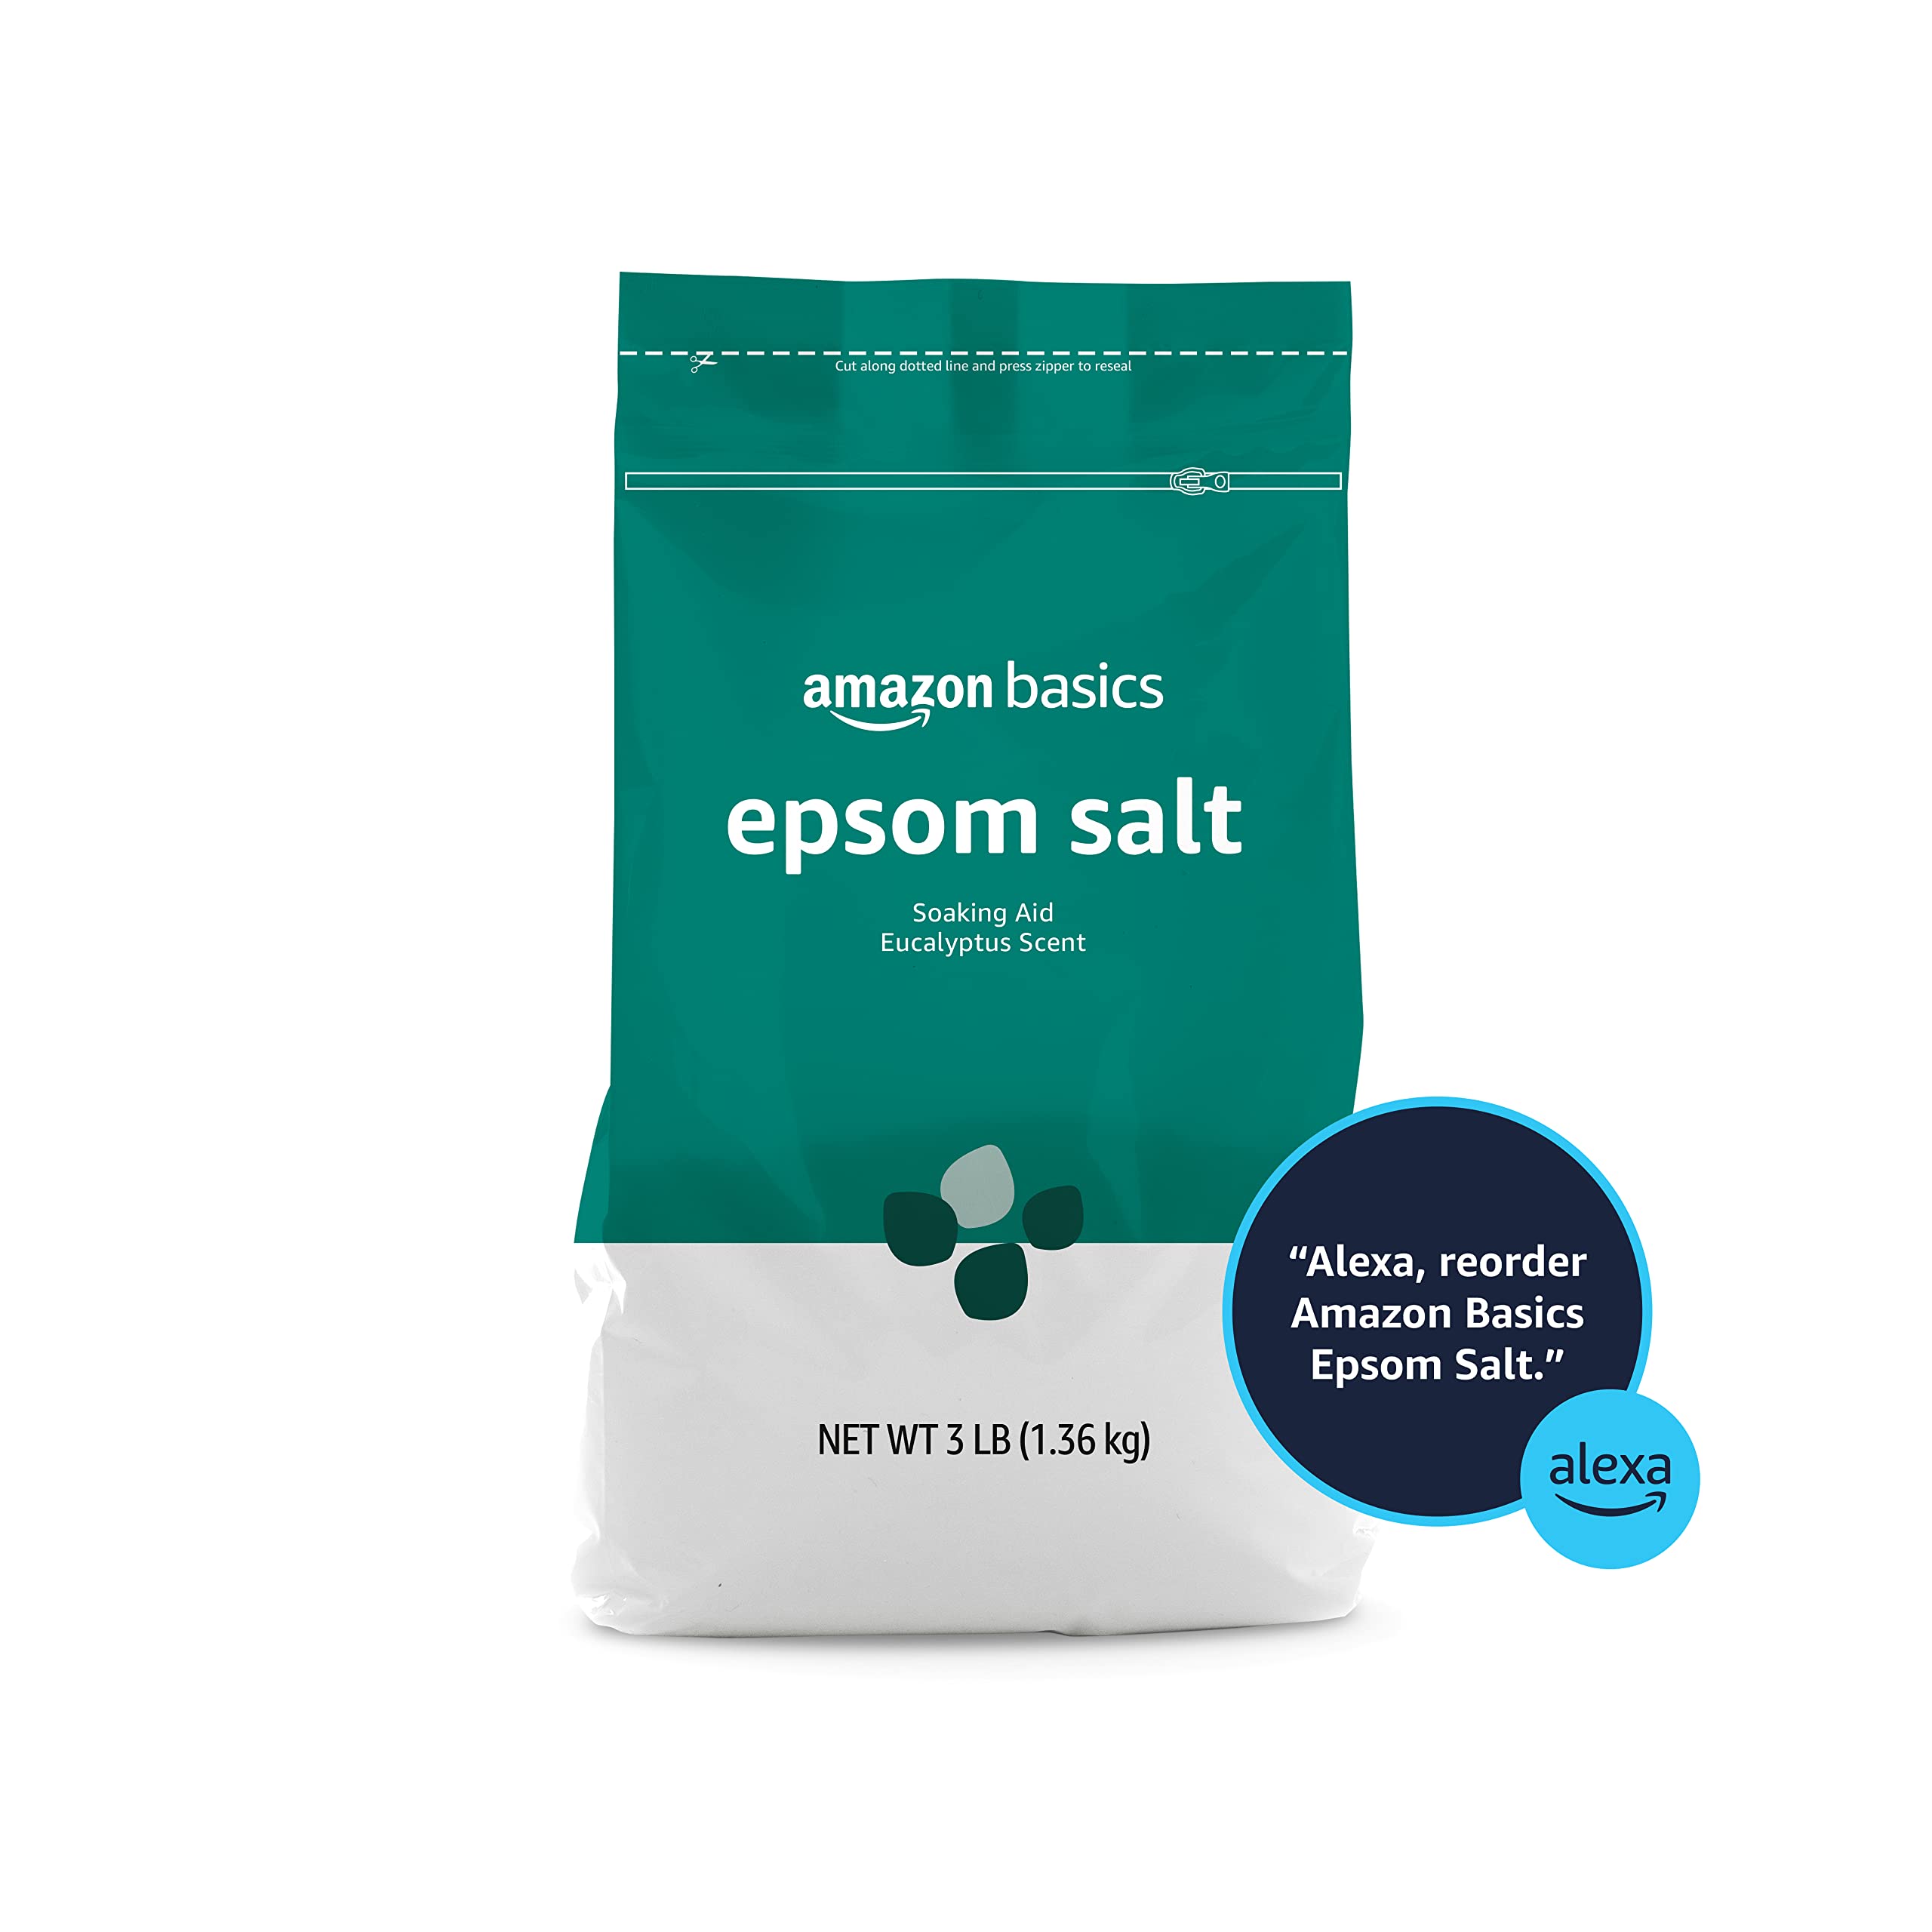 Amazon Basics Epsom Salt Soaking Aid, Eucalyptus Scented, 3 Pound (Previously Solimo)